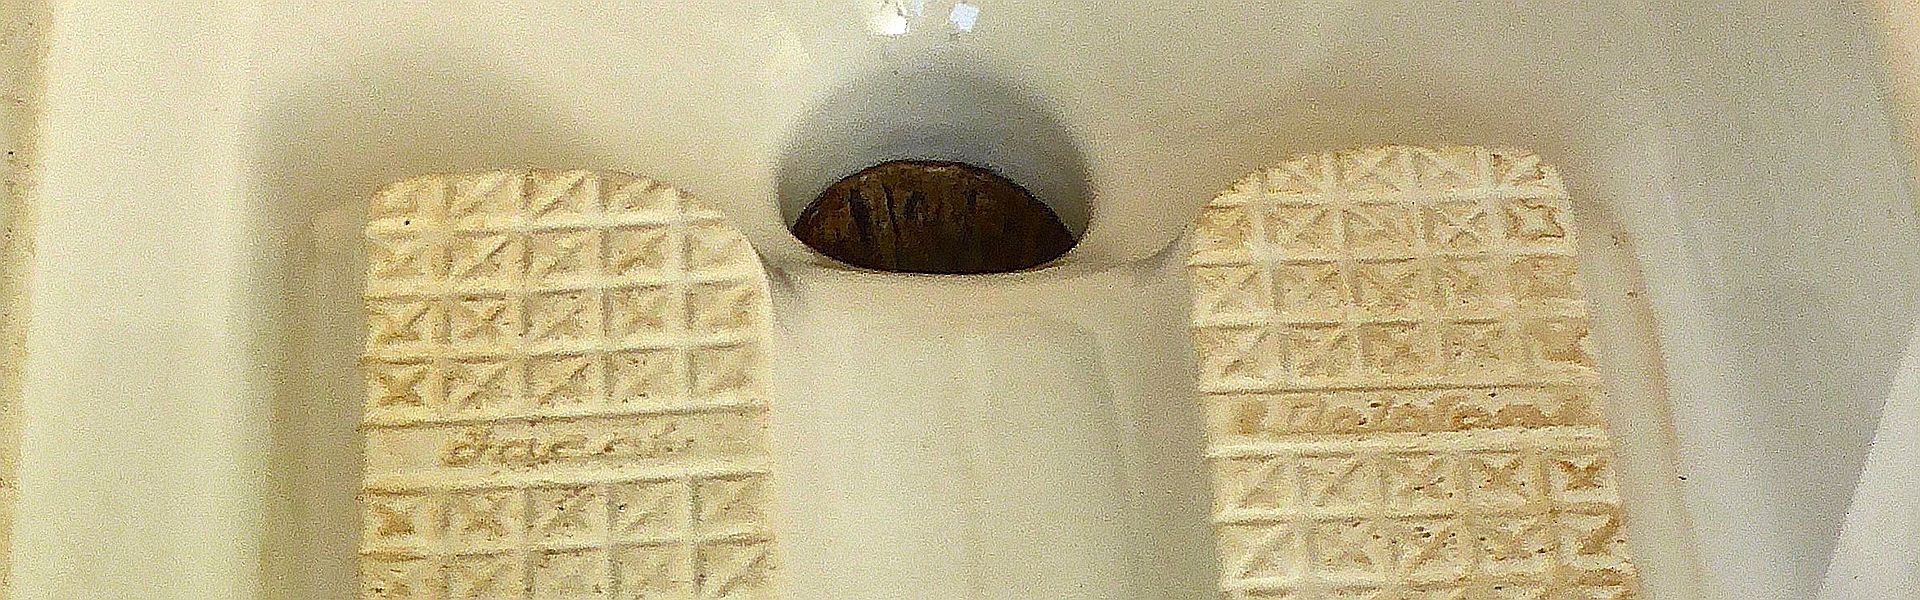 Frans toilet bij het versje 'Inspiratiegemak' van Paul Schrijf. Foto MemoryCatcher at Pixabay